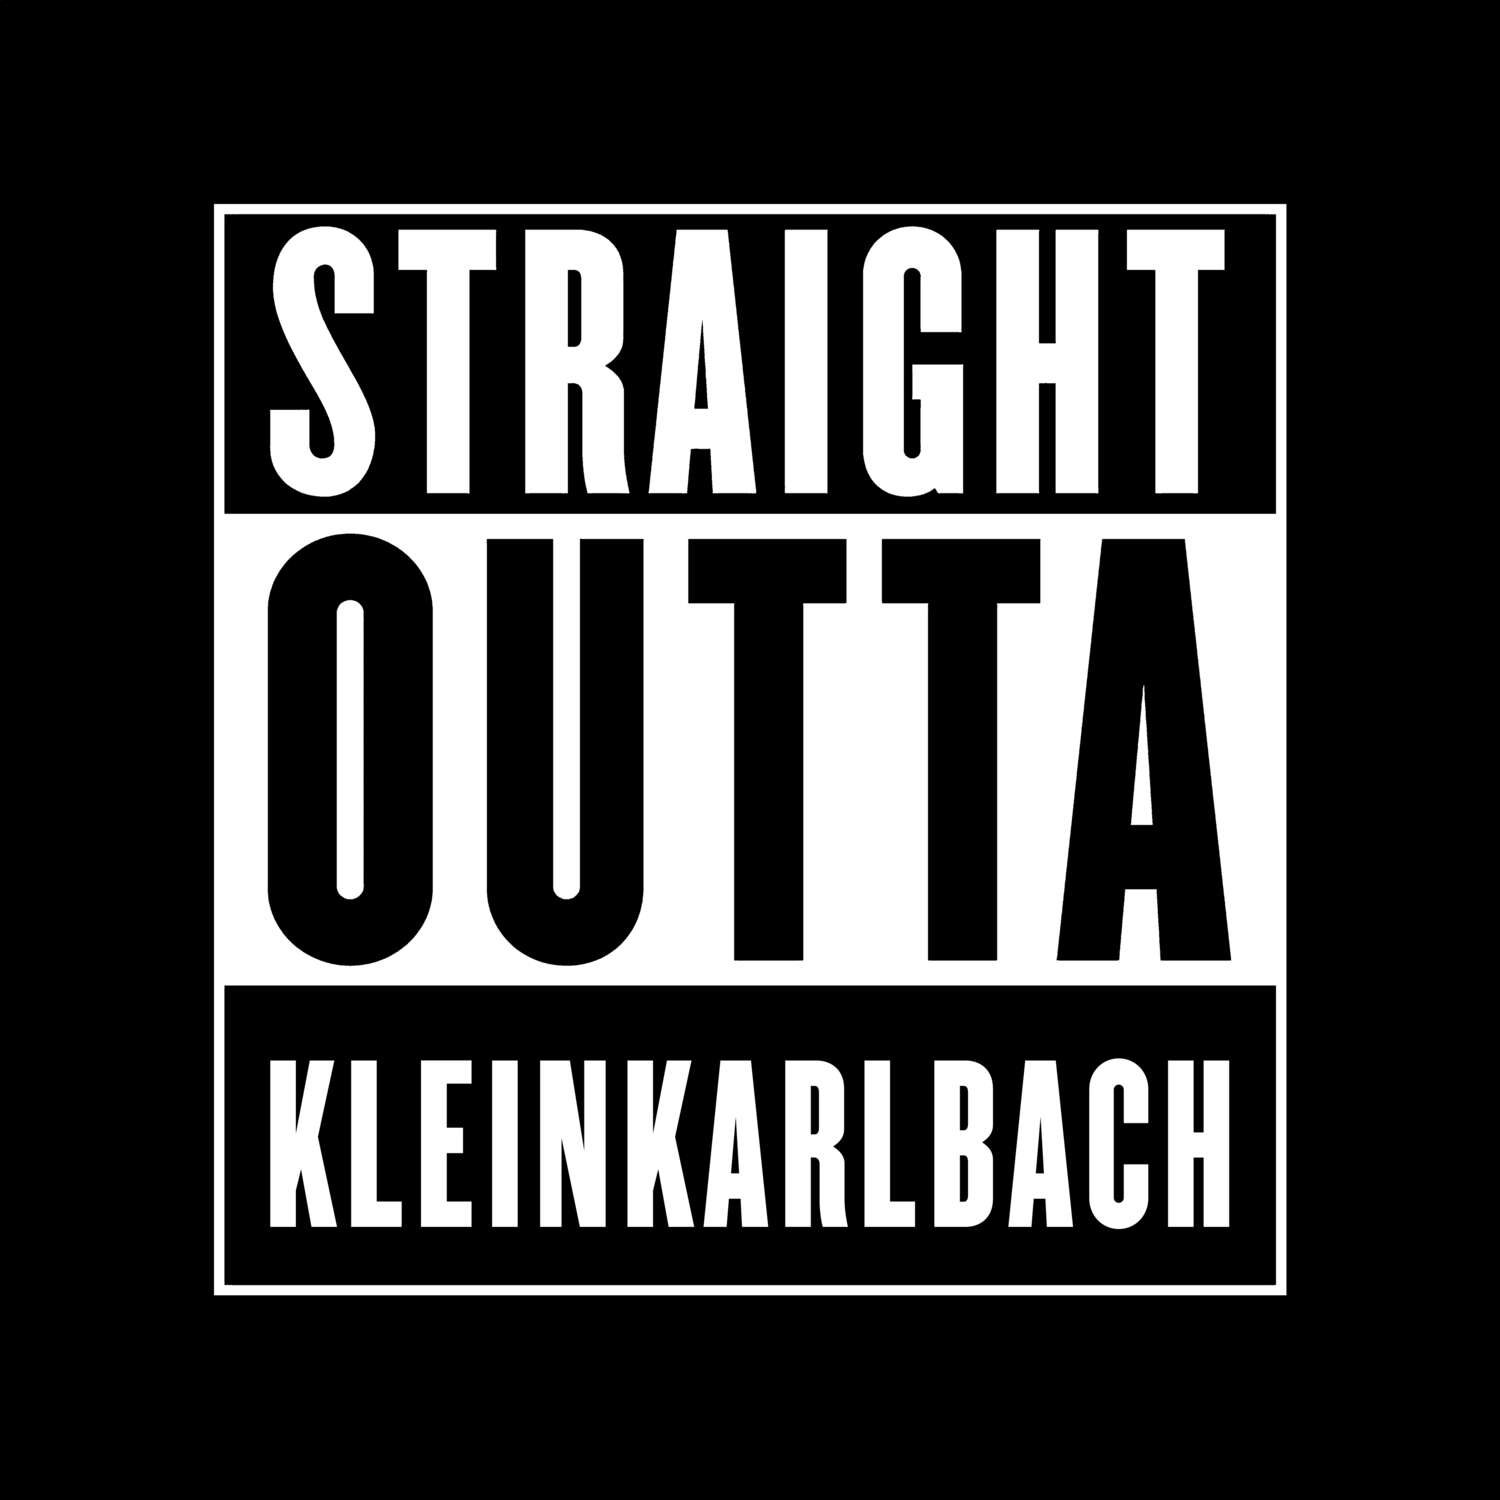 Kleinkarlbach T-Shirt »Straight Outta«